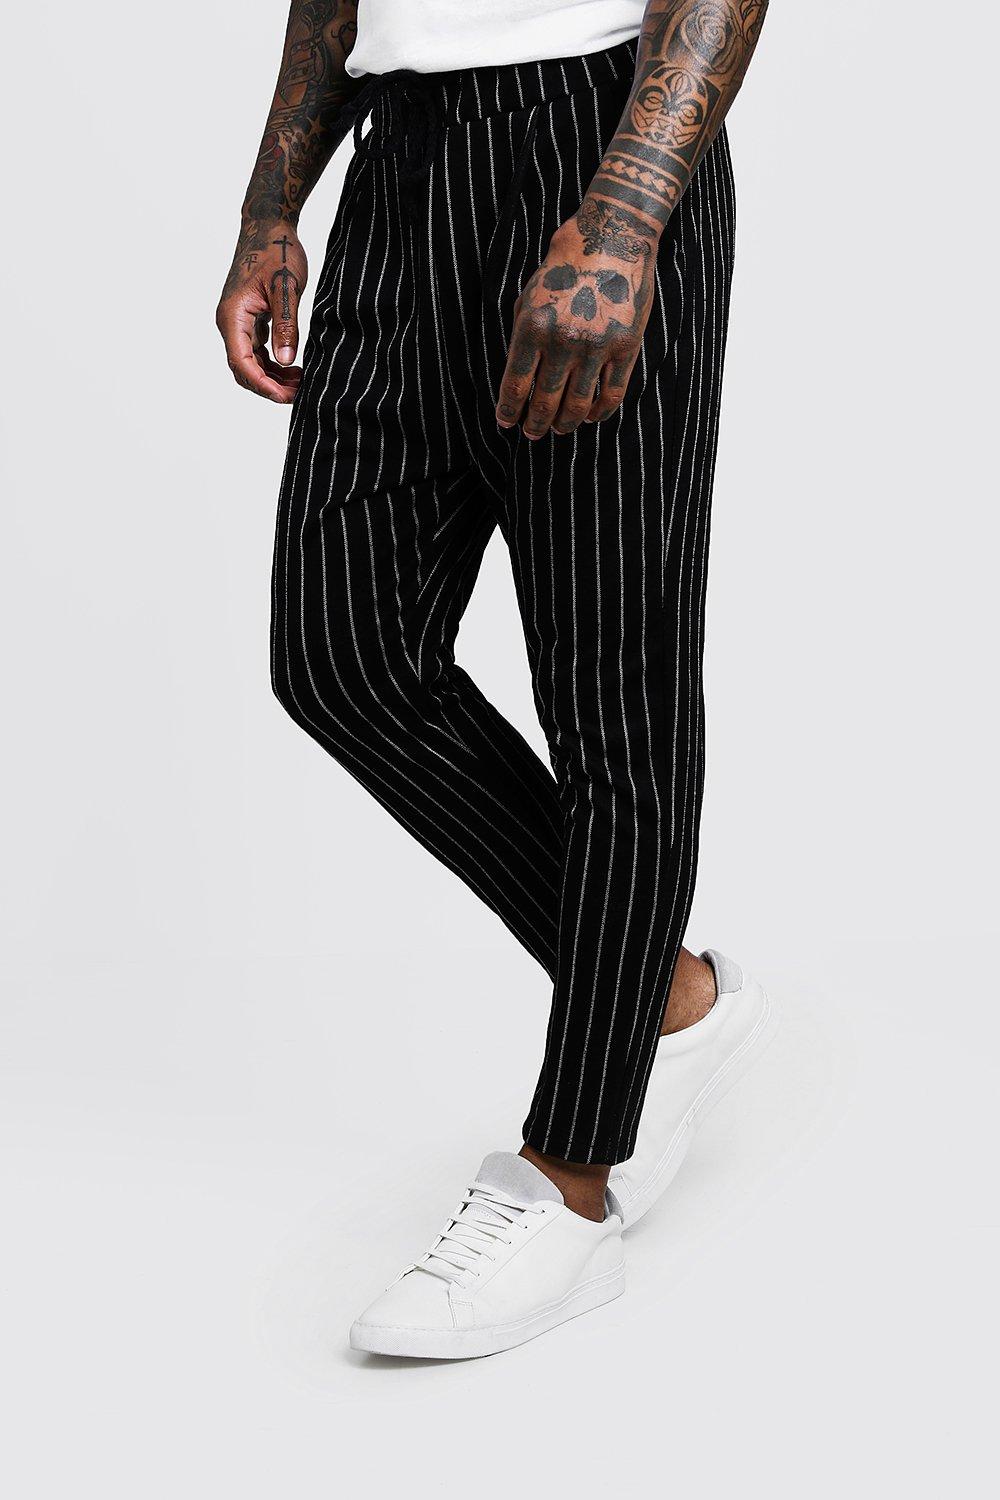 pin striped pants